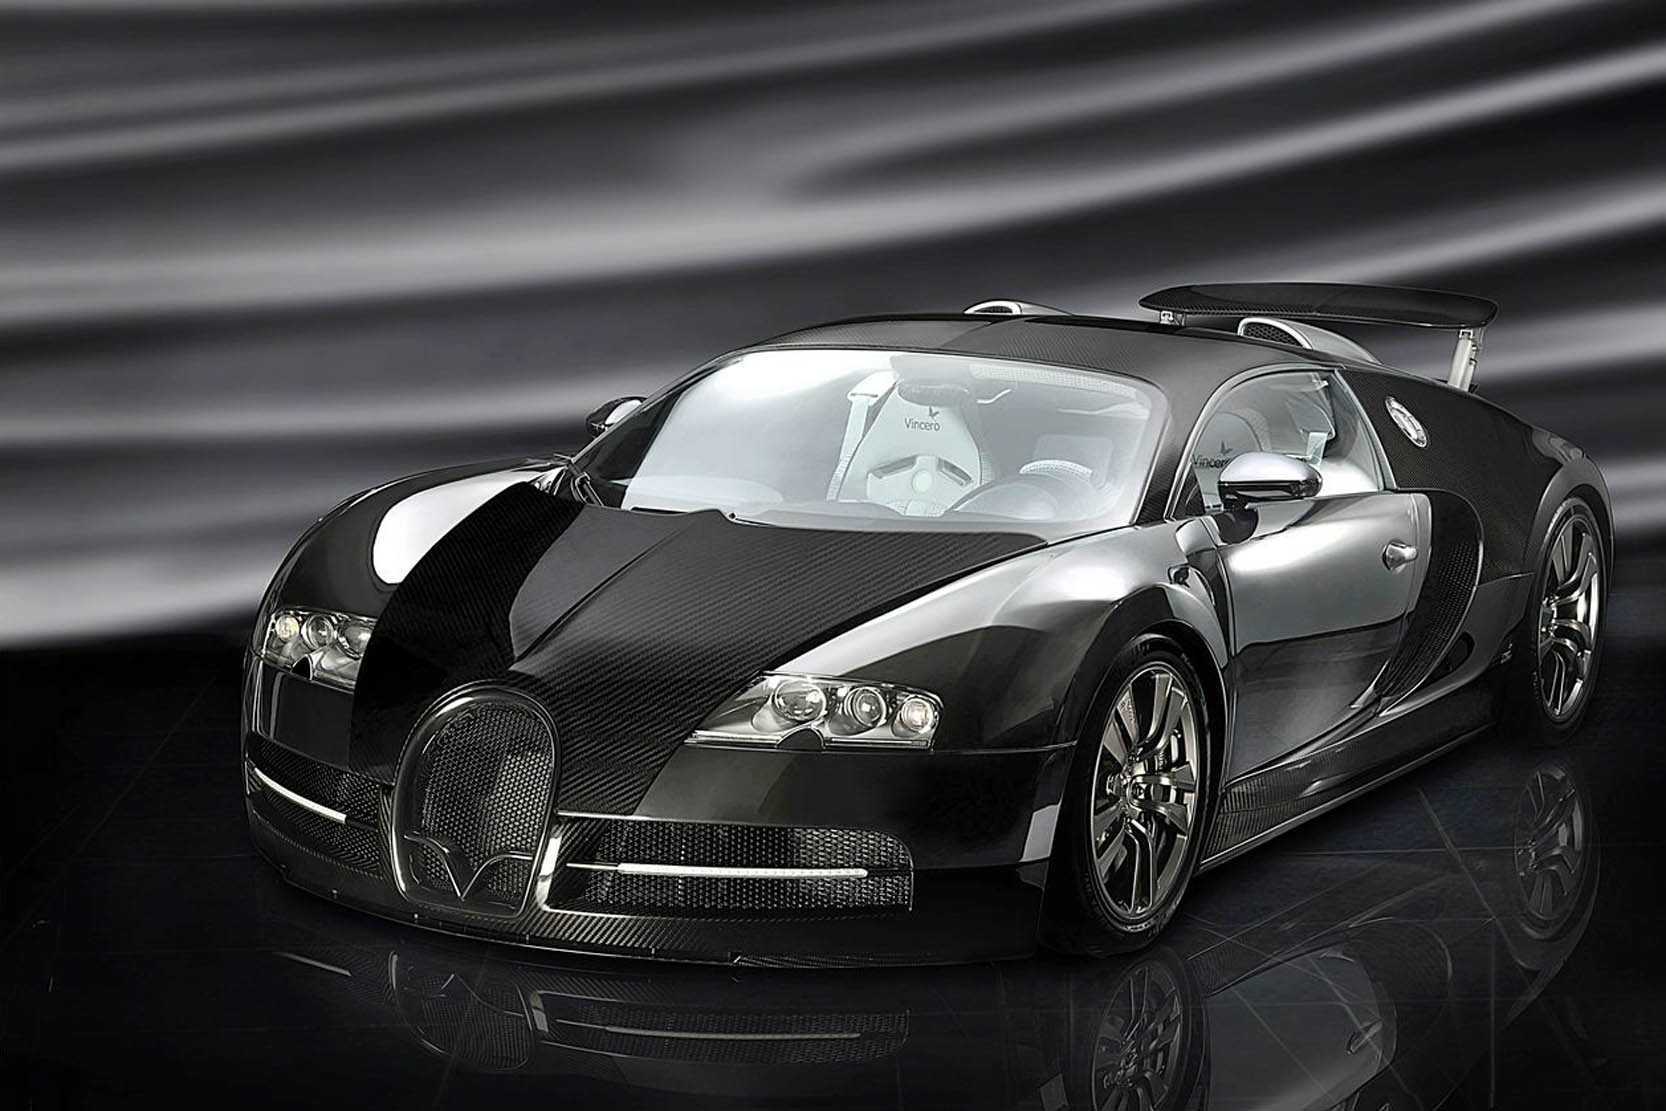 Image principale de l'actu: Bugatti veyron vincero la plus puissante des veyron 